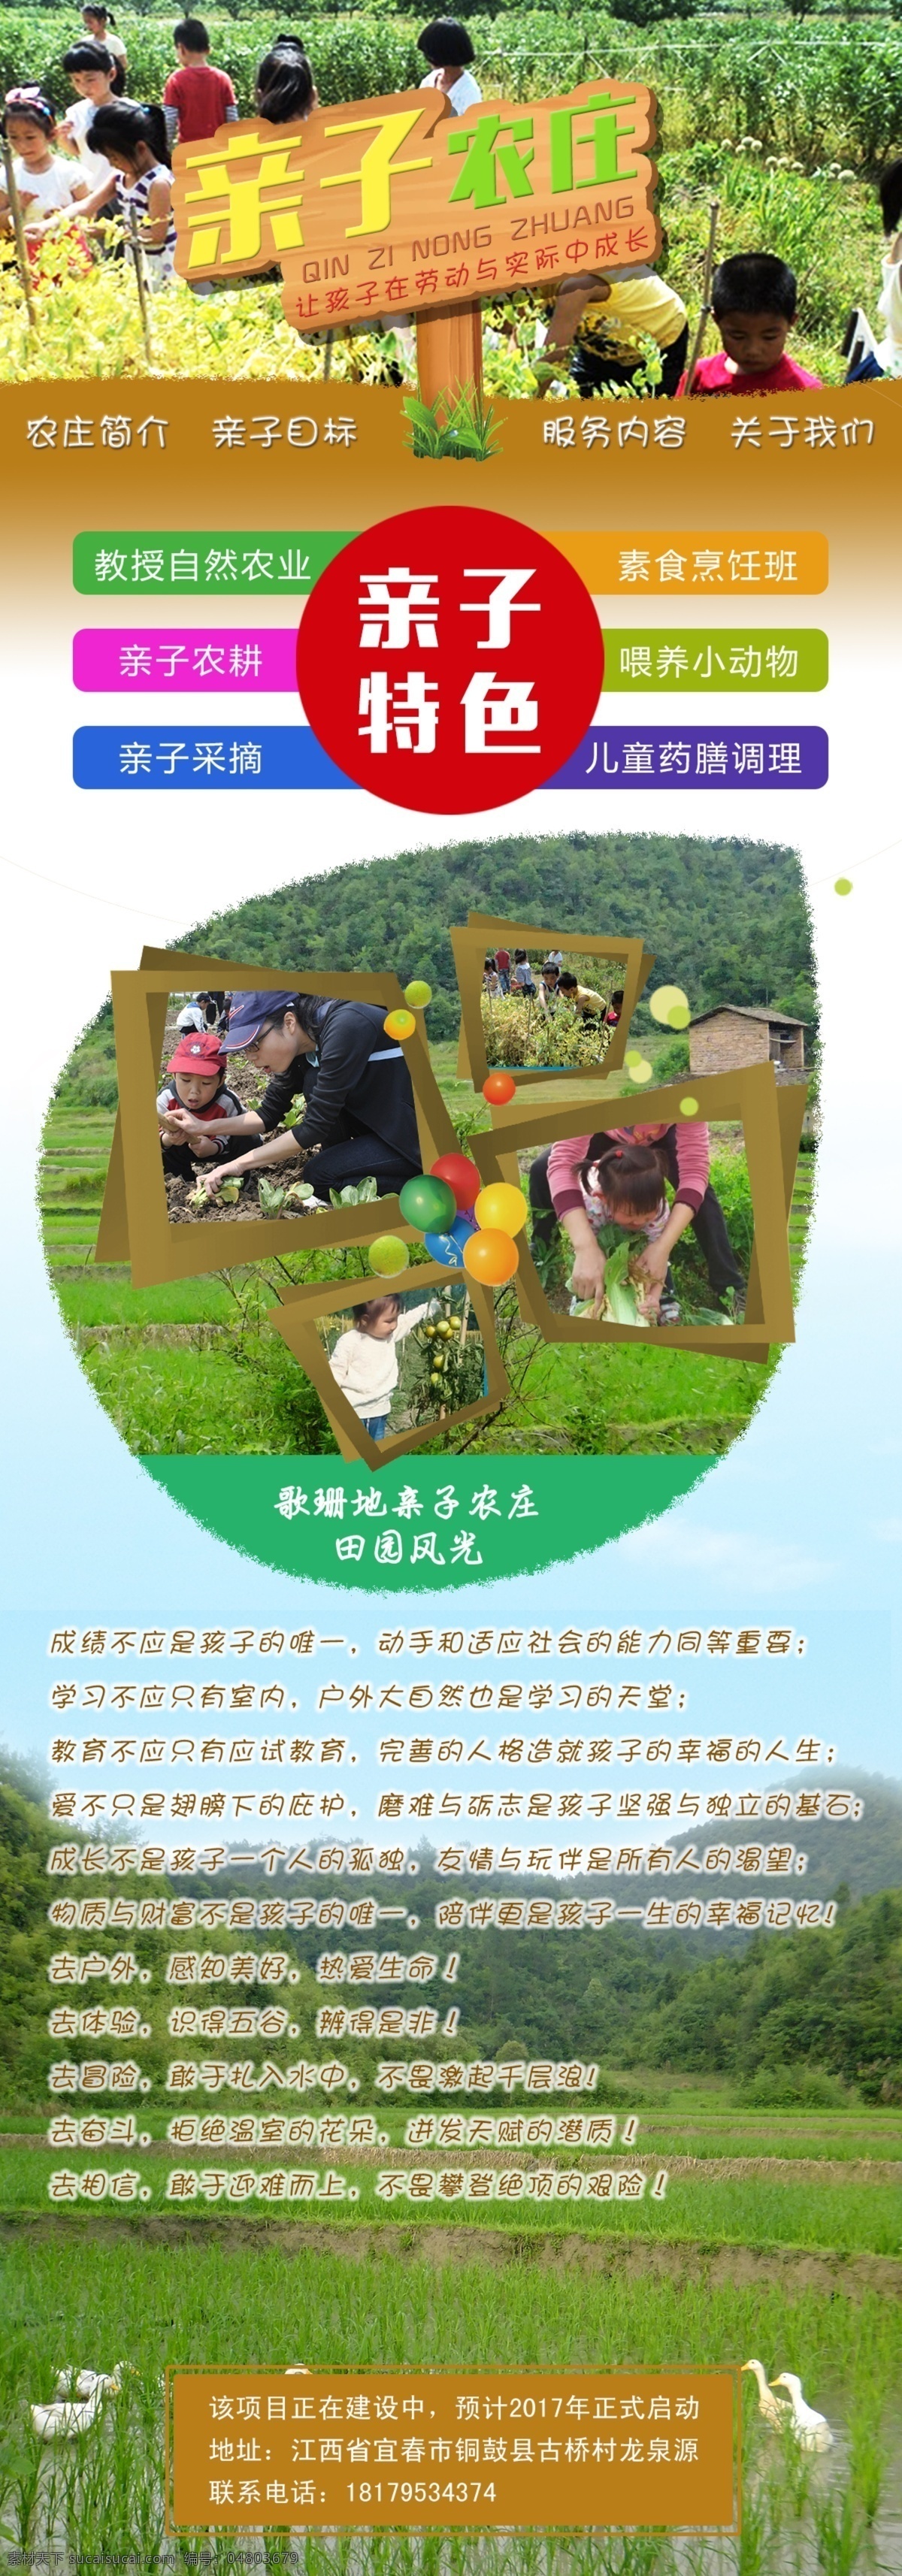 亲子农庄主页 亲子农庄 亲子教育 网站主页设计 生态园 农场 生态 web 界面设计 中文模板